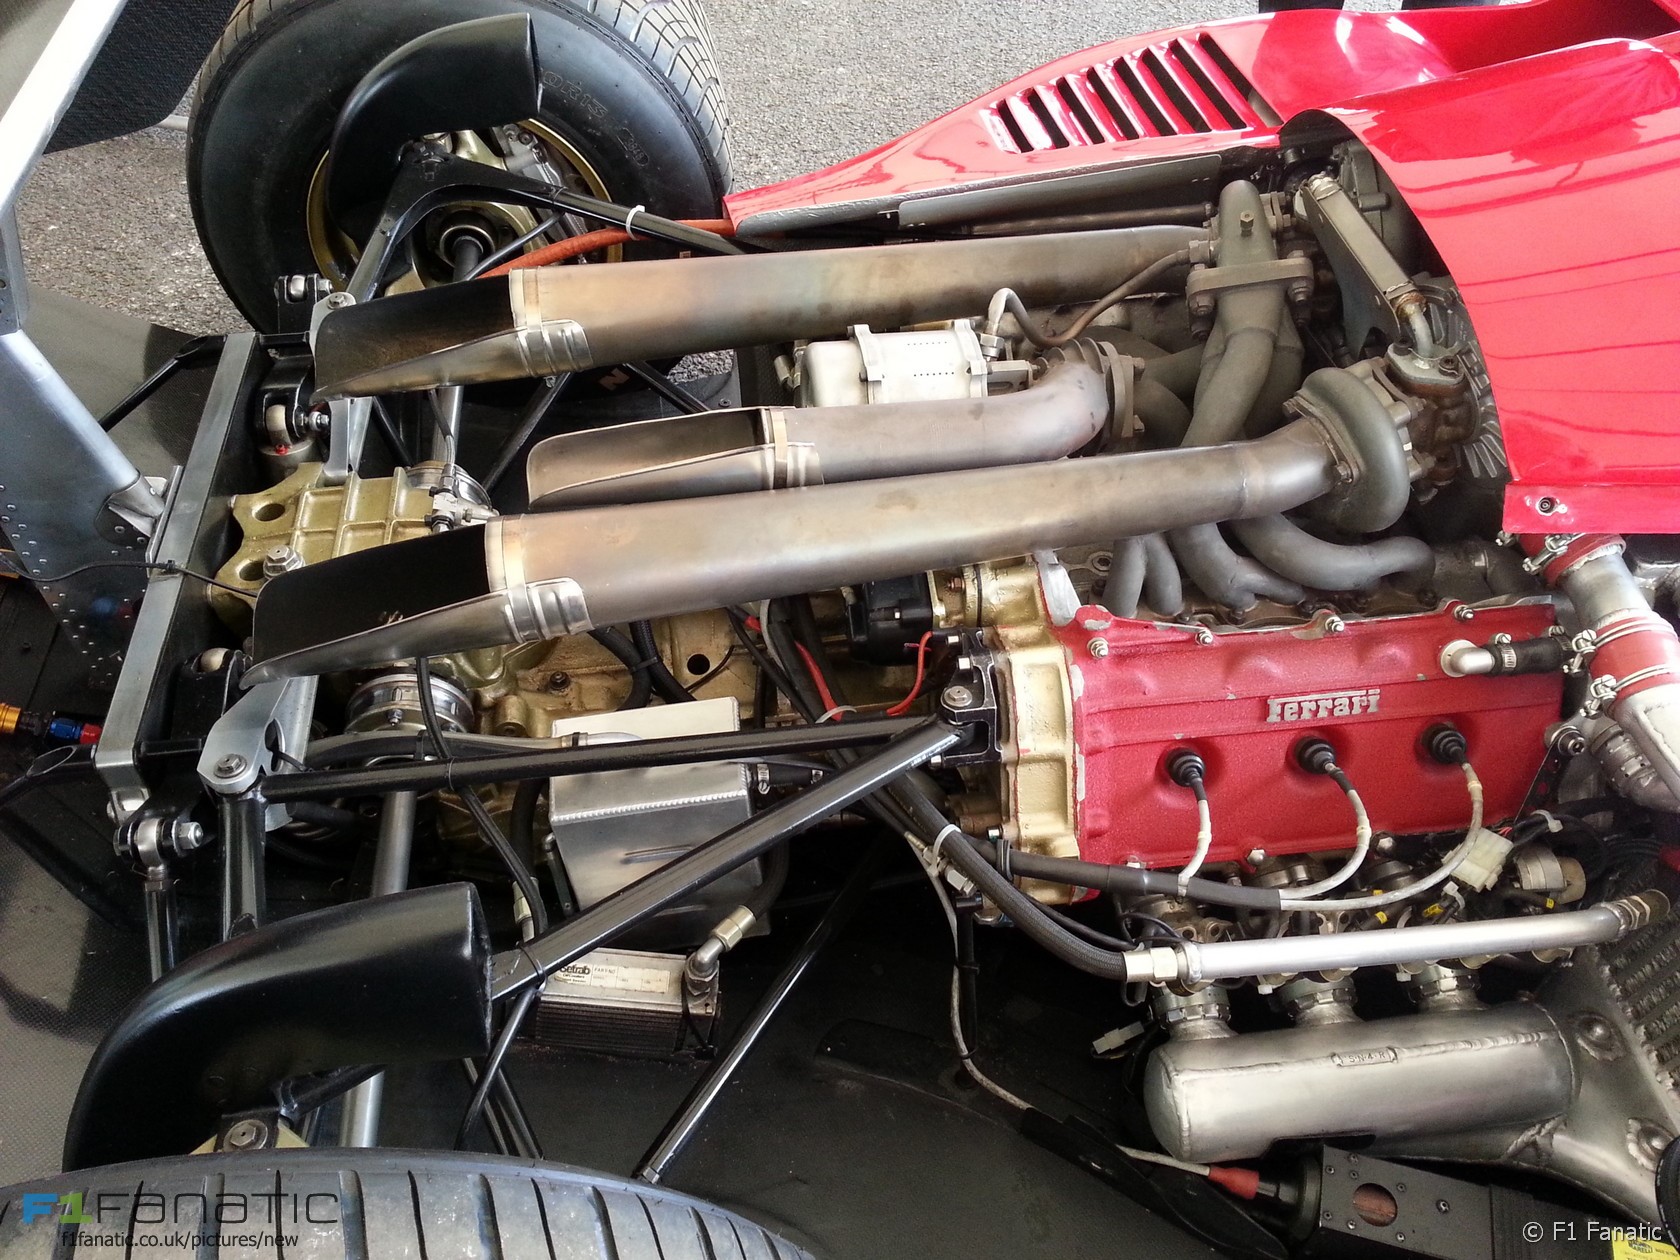 1984 Ferrari 126 C4 engine.